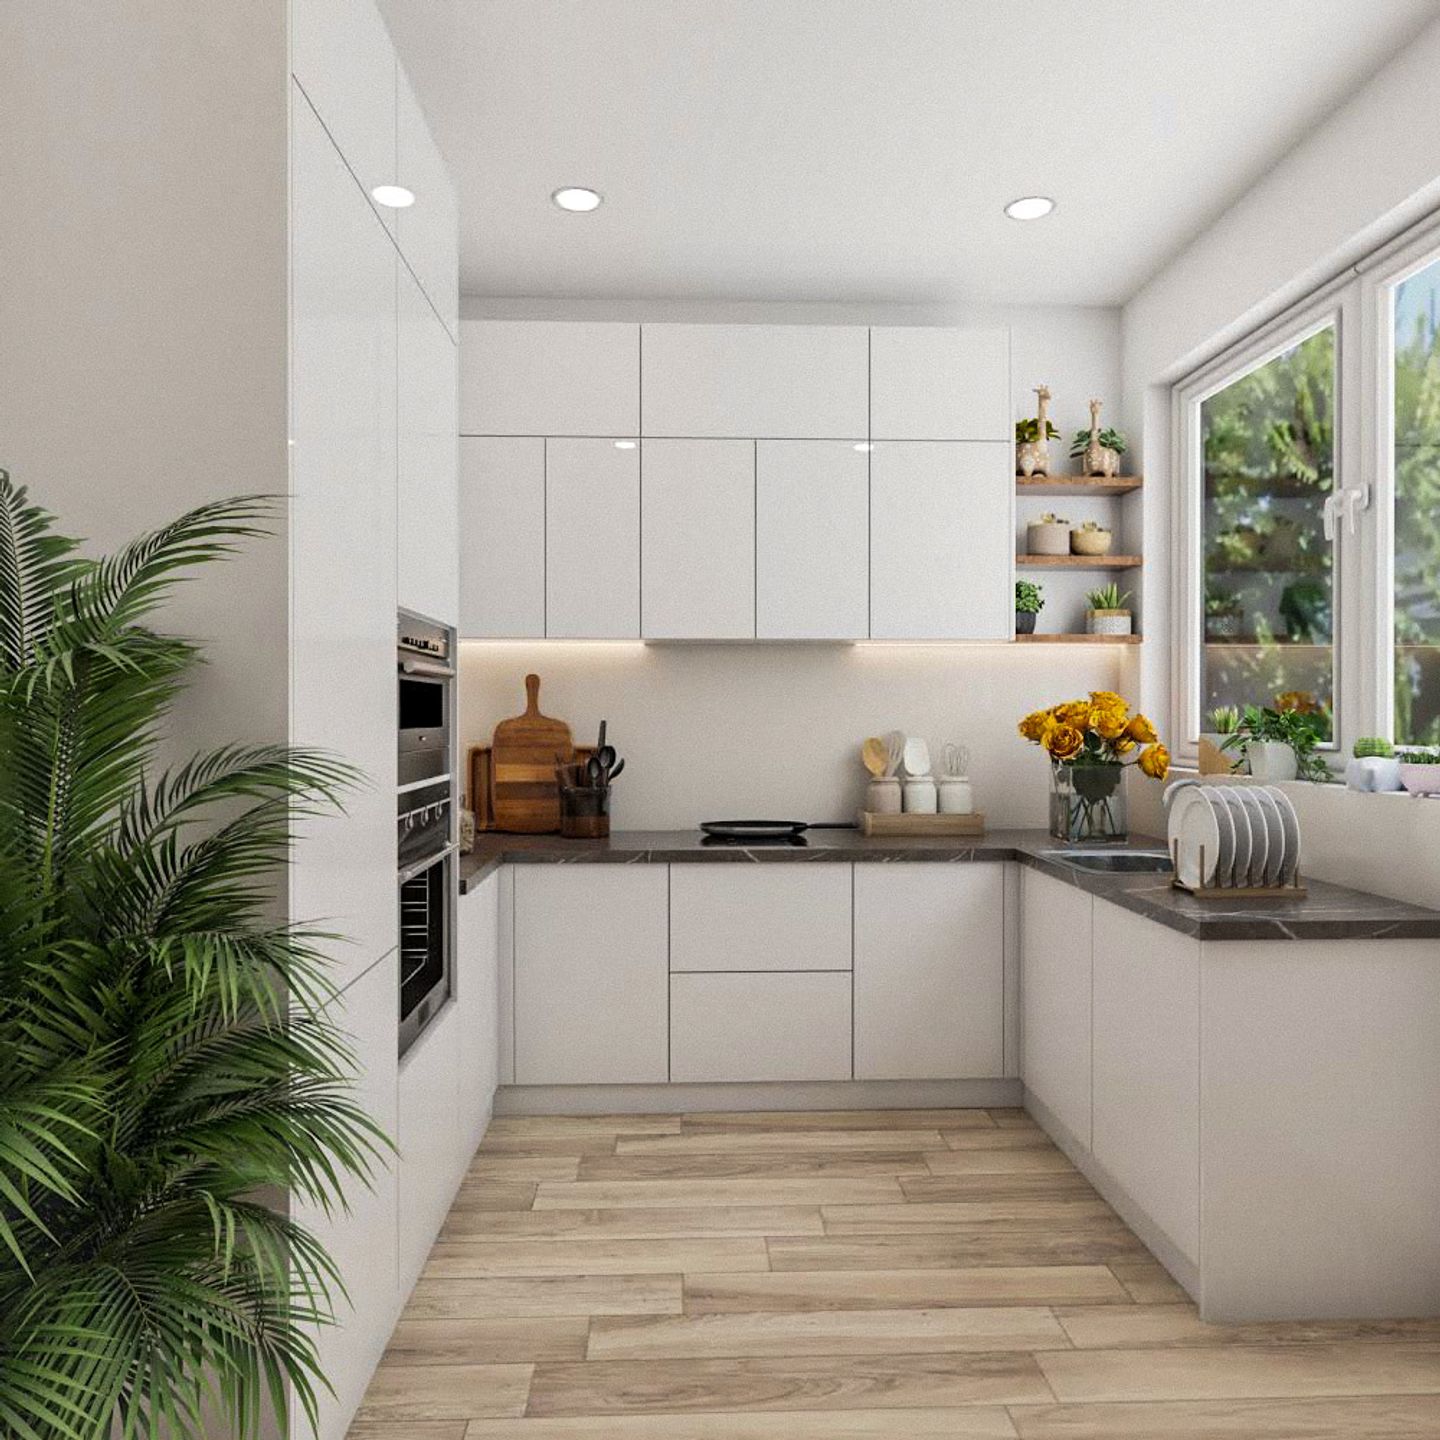 U-Shaped White Kitchen Design With Quartz Countertop - Livspace